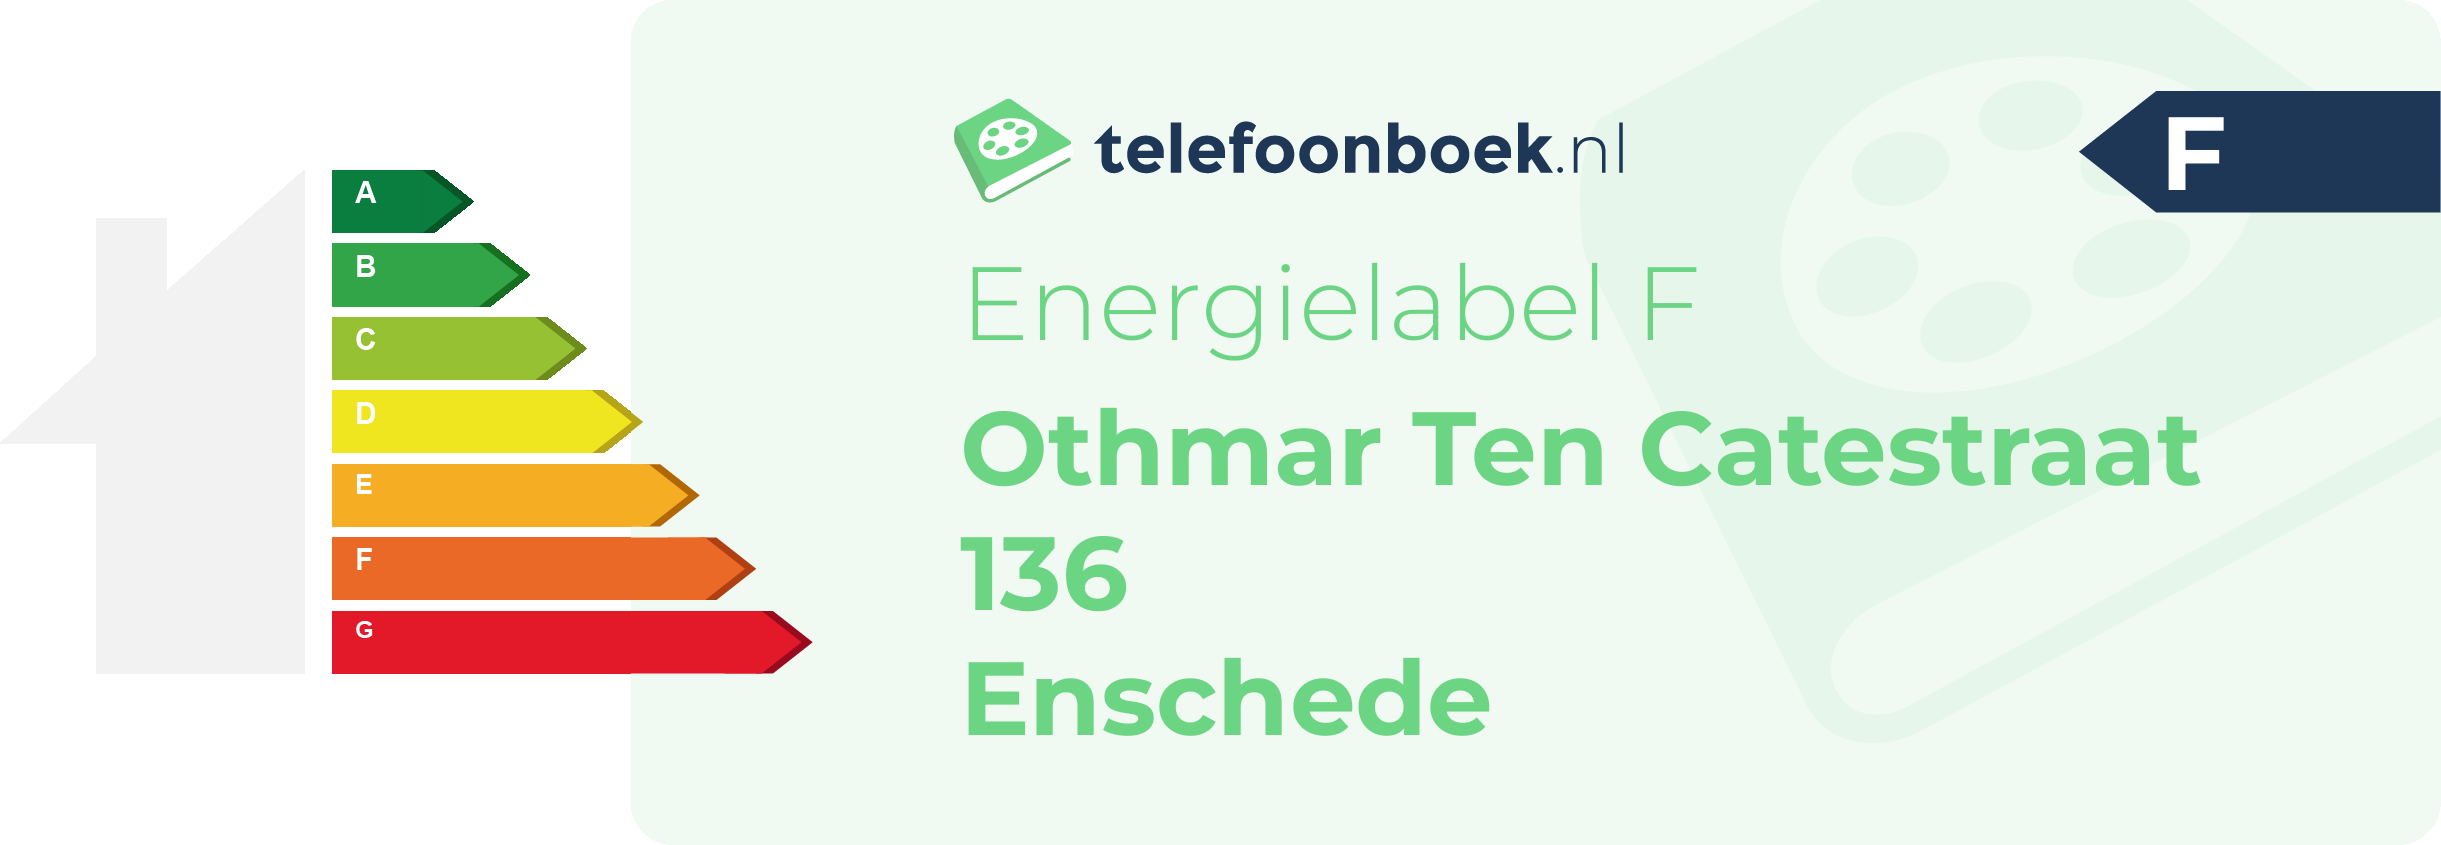 Energielabel Othmar Ten Catestraat 136 Enschede